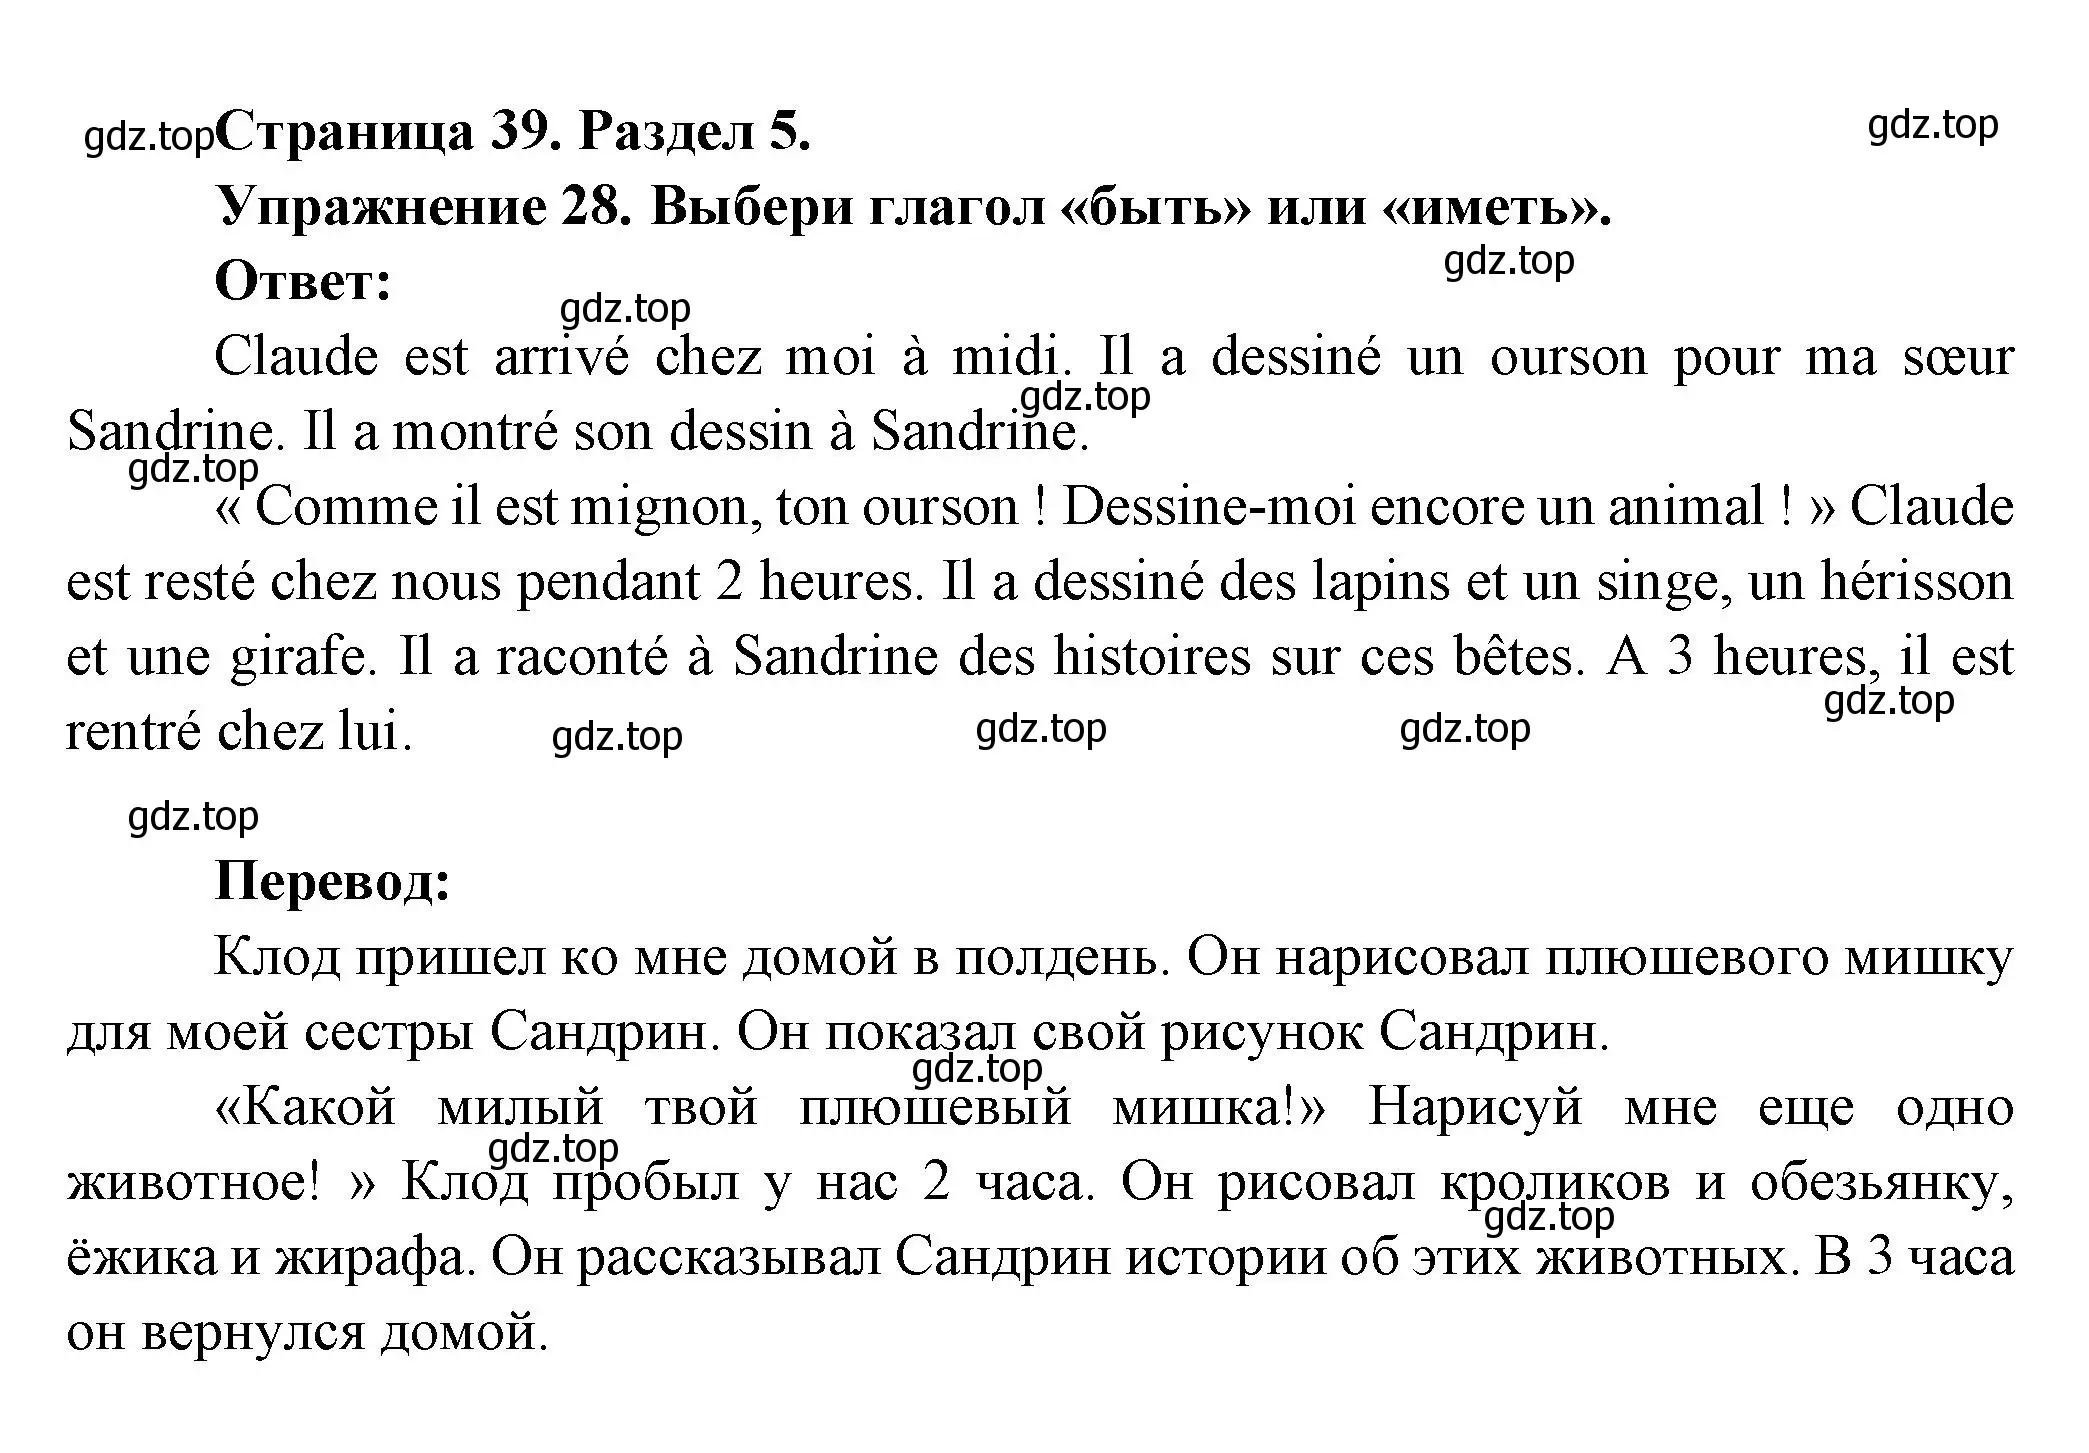 Решение номер 28 (страница 39) гдз по французскому языку 5 класс Береговская, Белосельская, учебник 2 часть